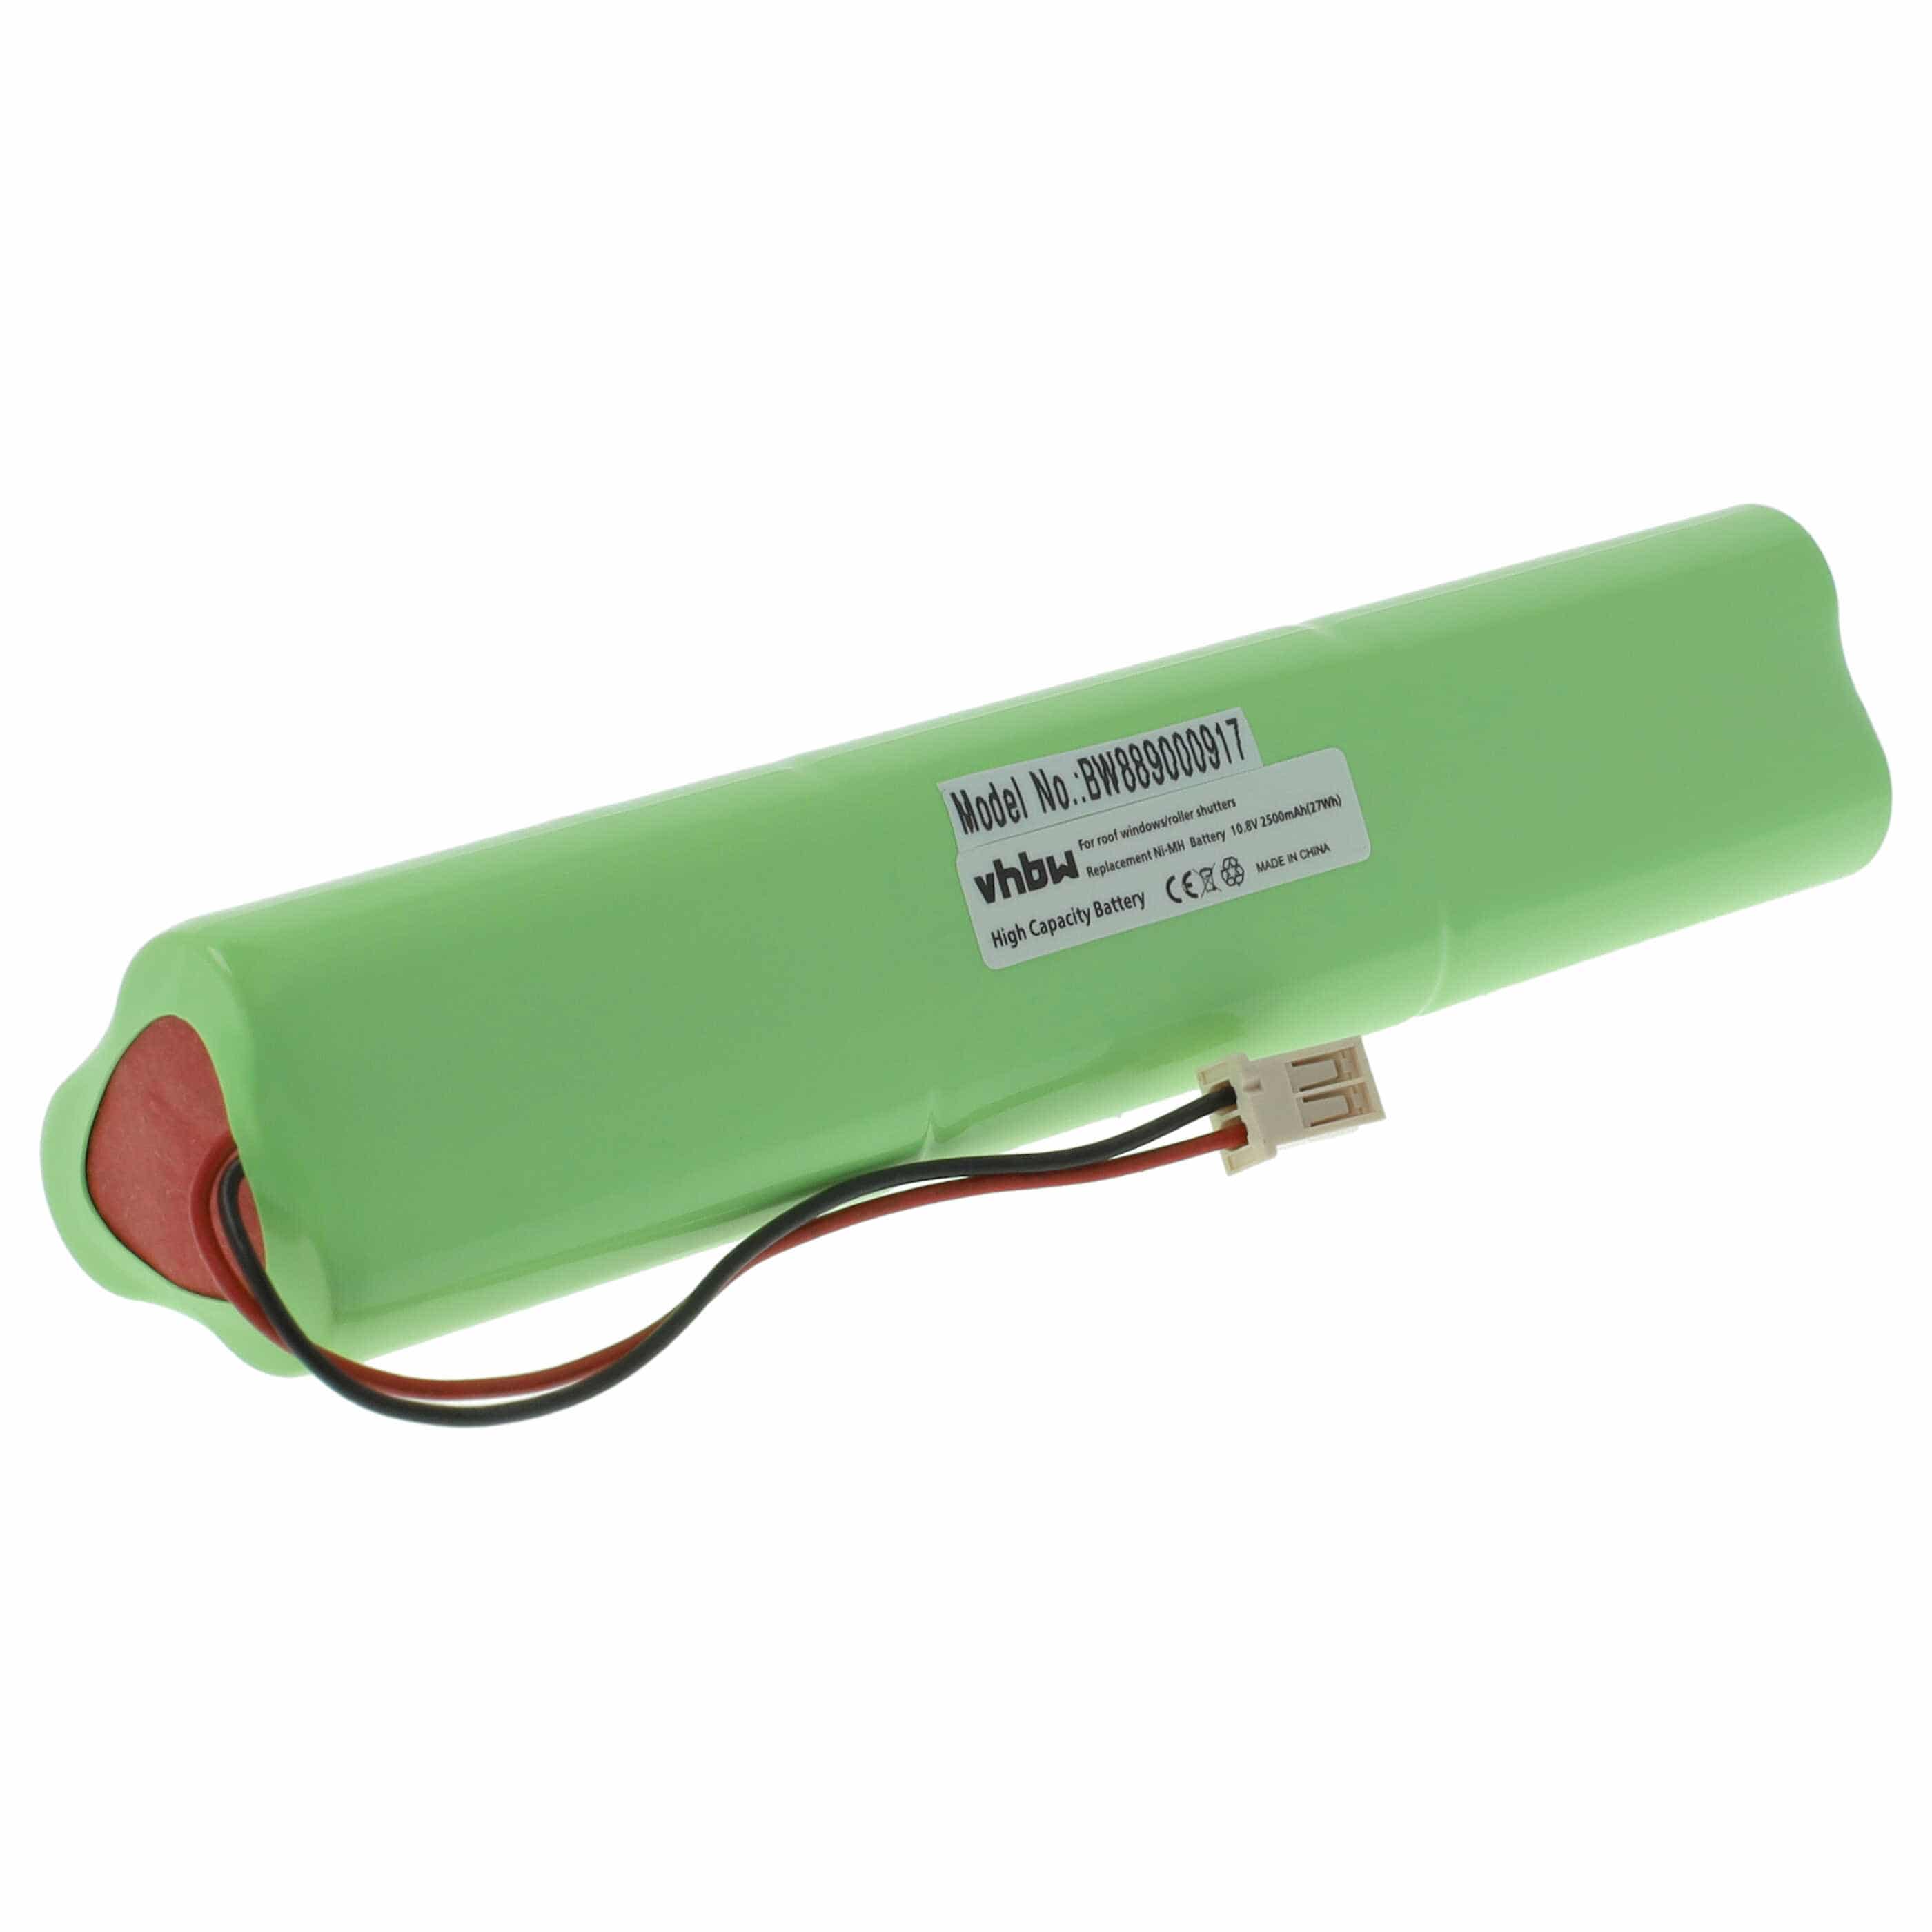 Roller Blind Battery Replacement for Velux 946930, 946933 - 2500mAh 10.8V NiMH